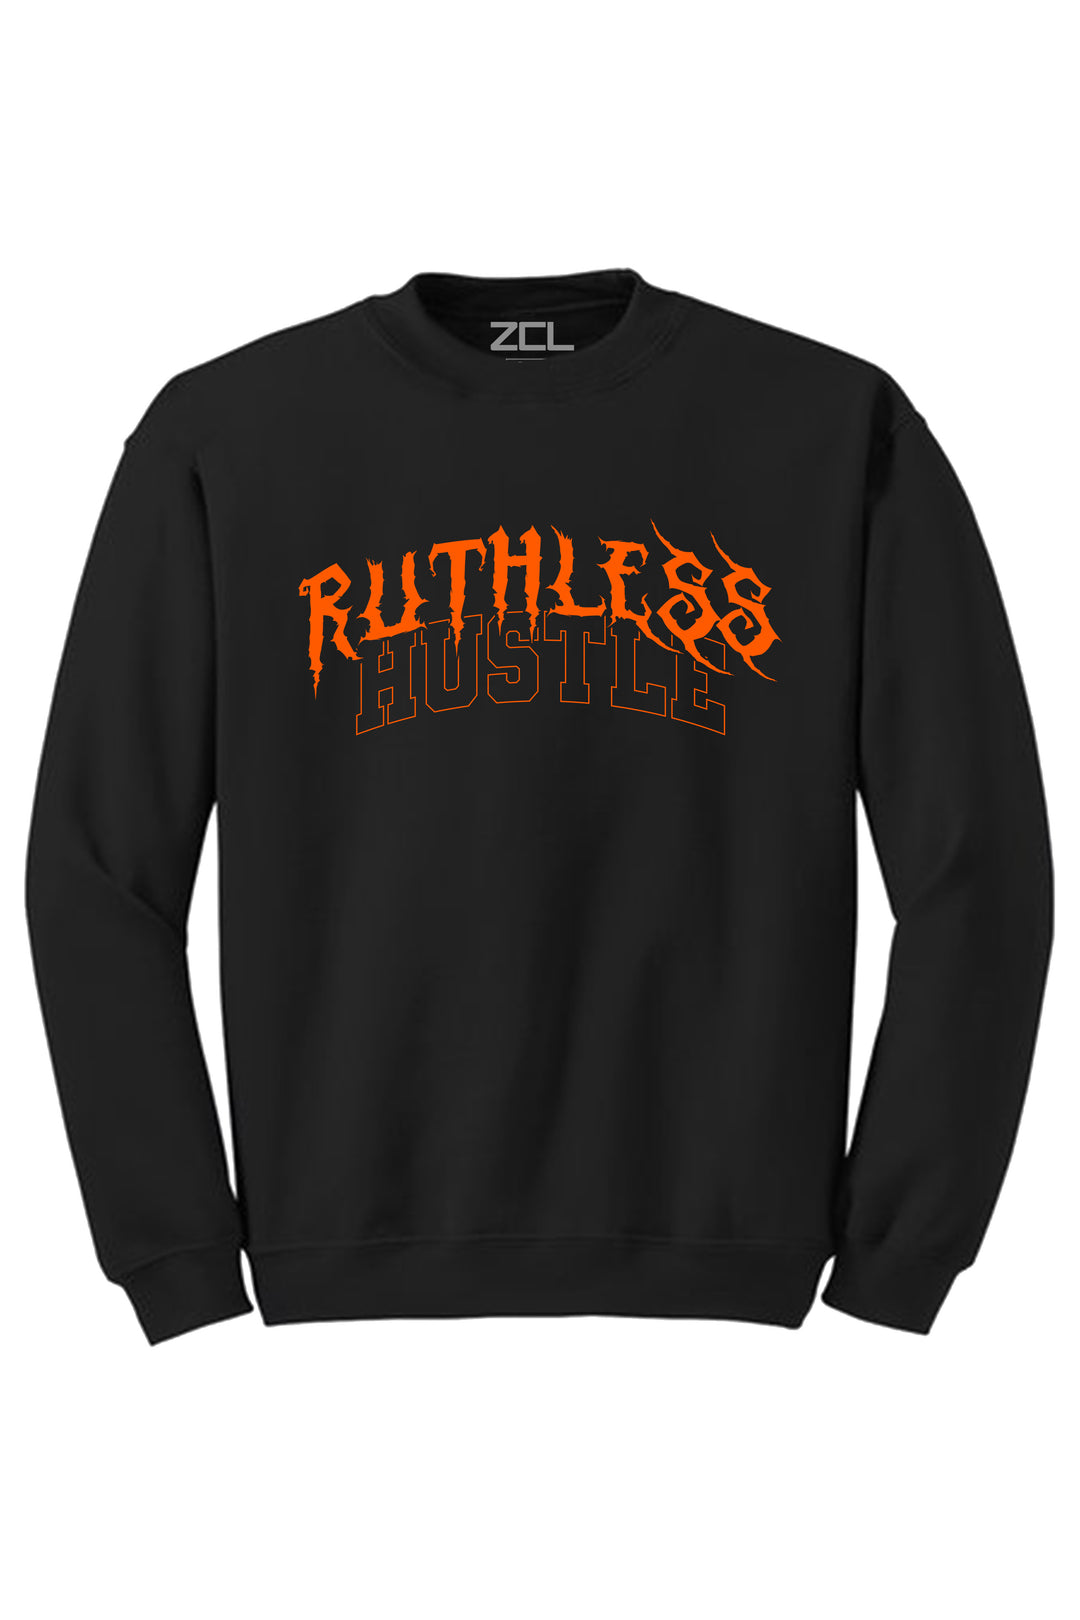 Ruthless Hustle Crewneck Sweatshirt (Orange Logo) - Zamage